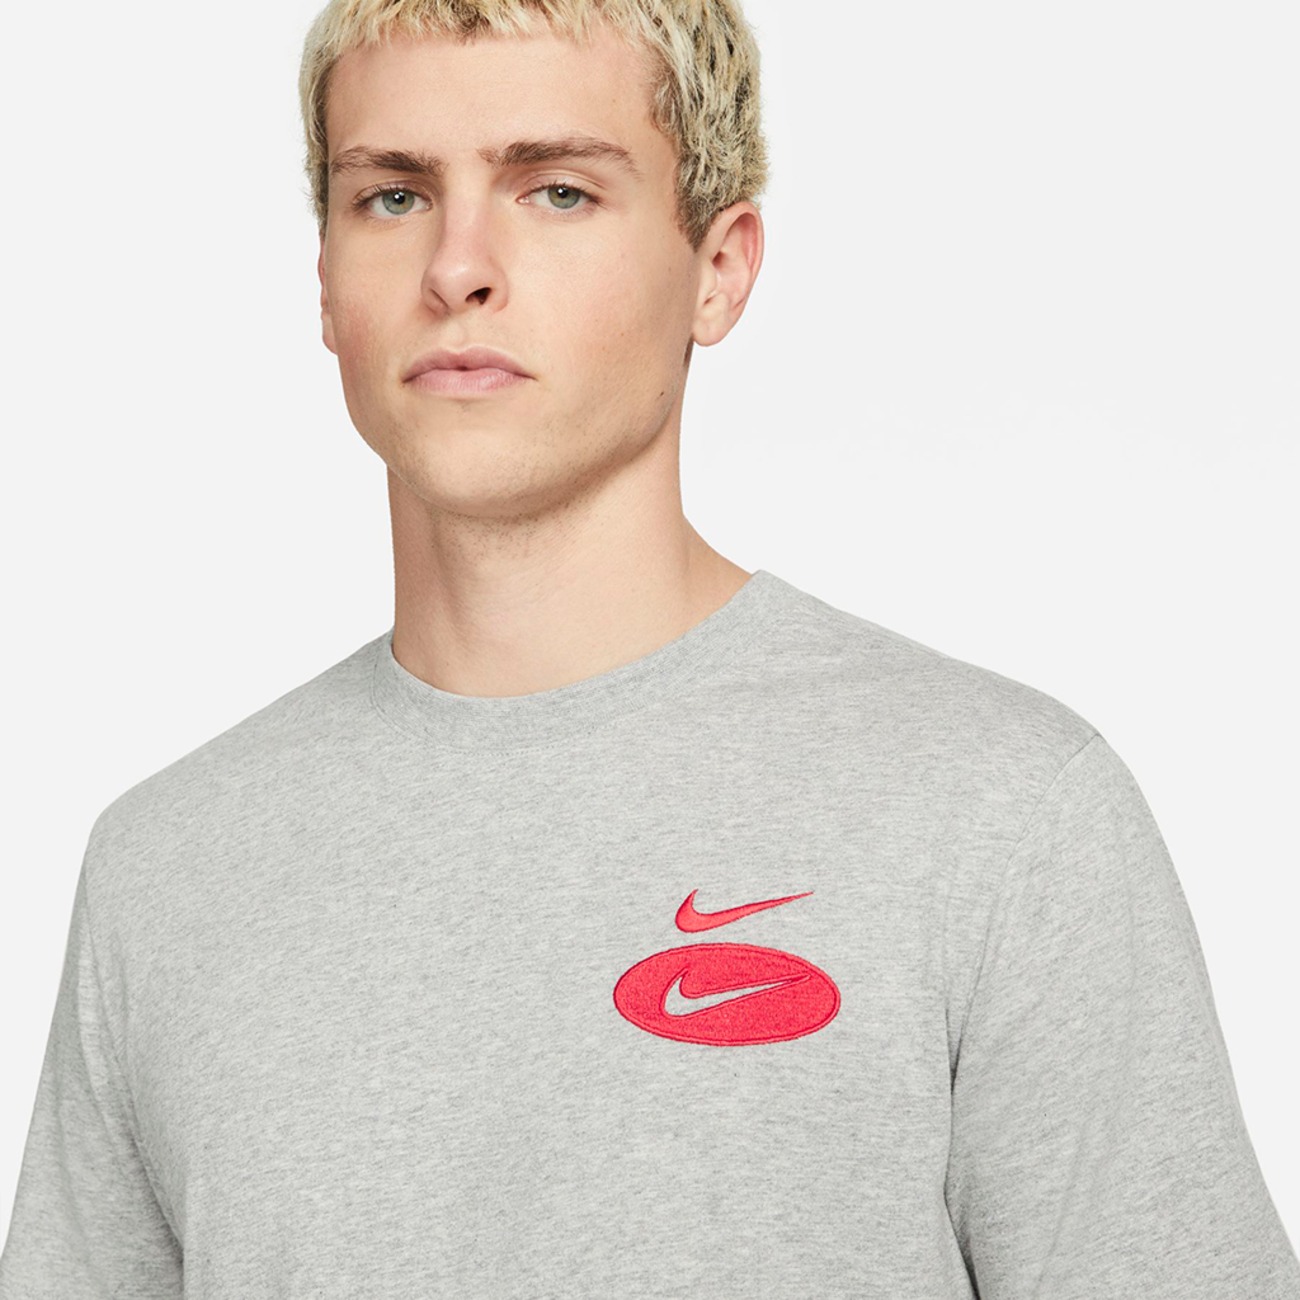 Camiseta Nike Sportswear Swoosh League Masculina - Foto 5